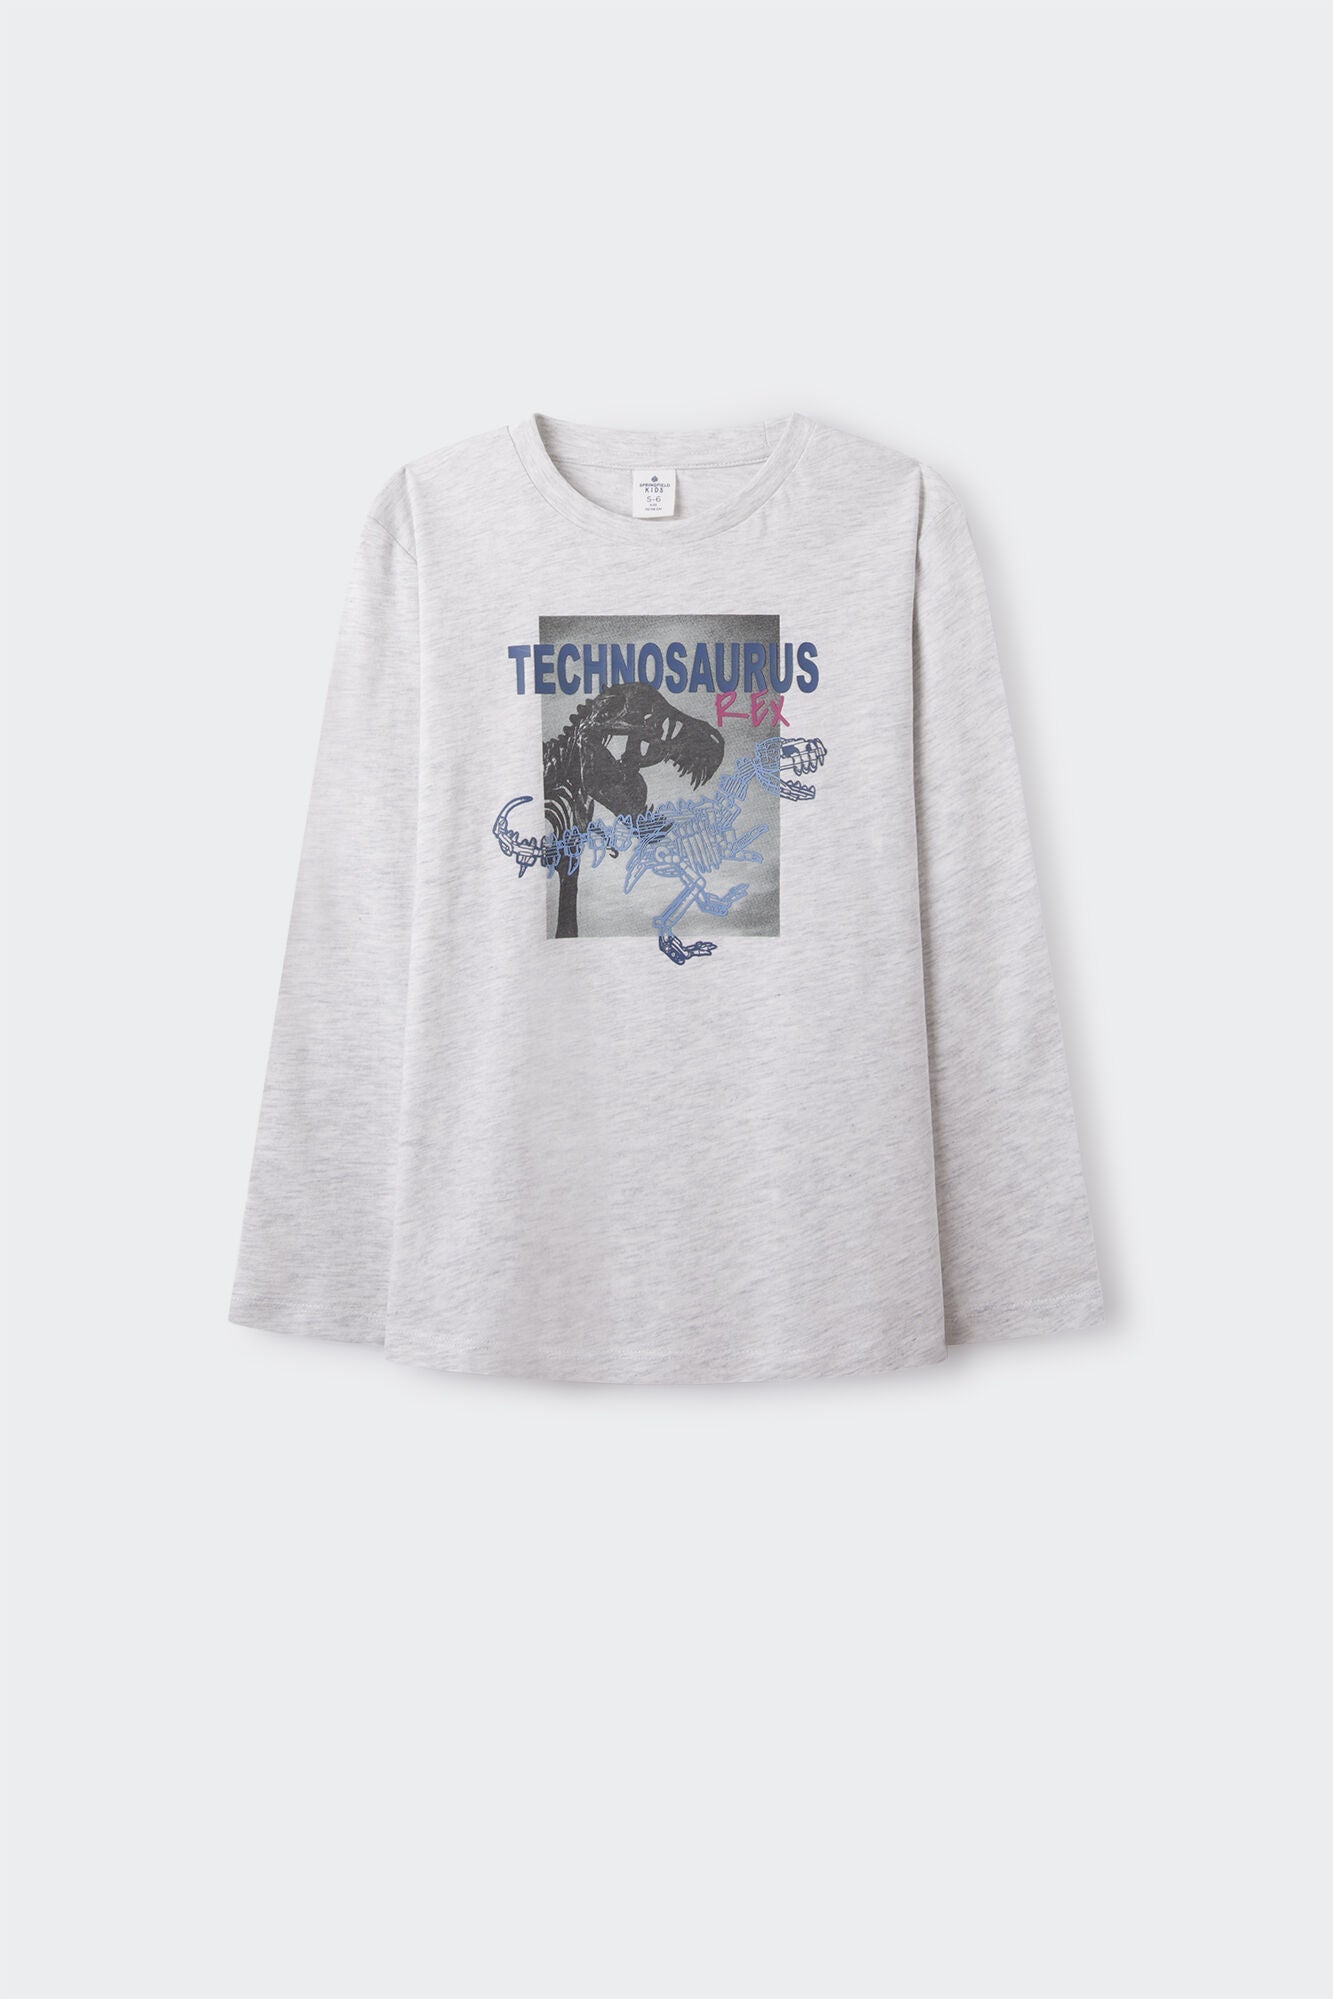 Boys' long sleeve T-shirt in a dinosaur print